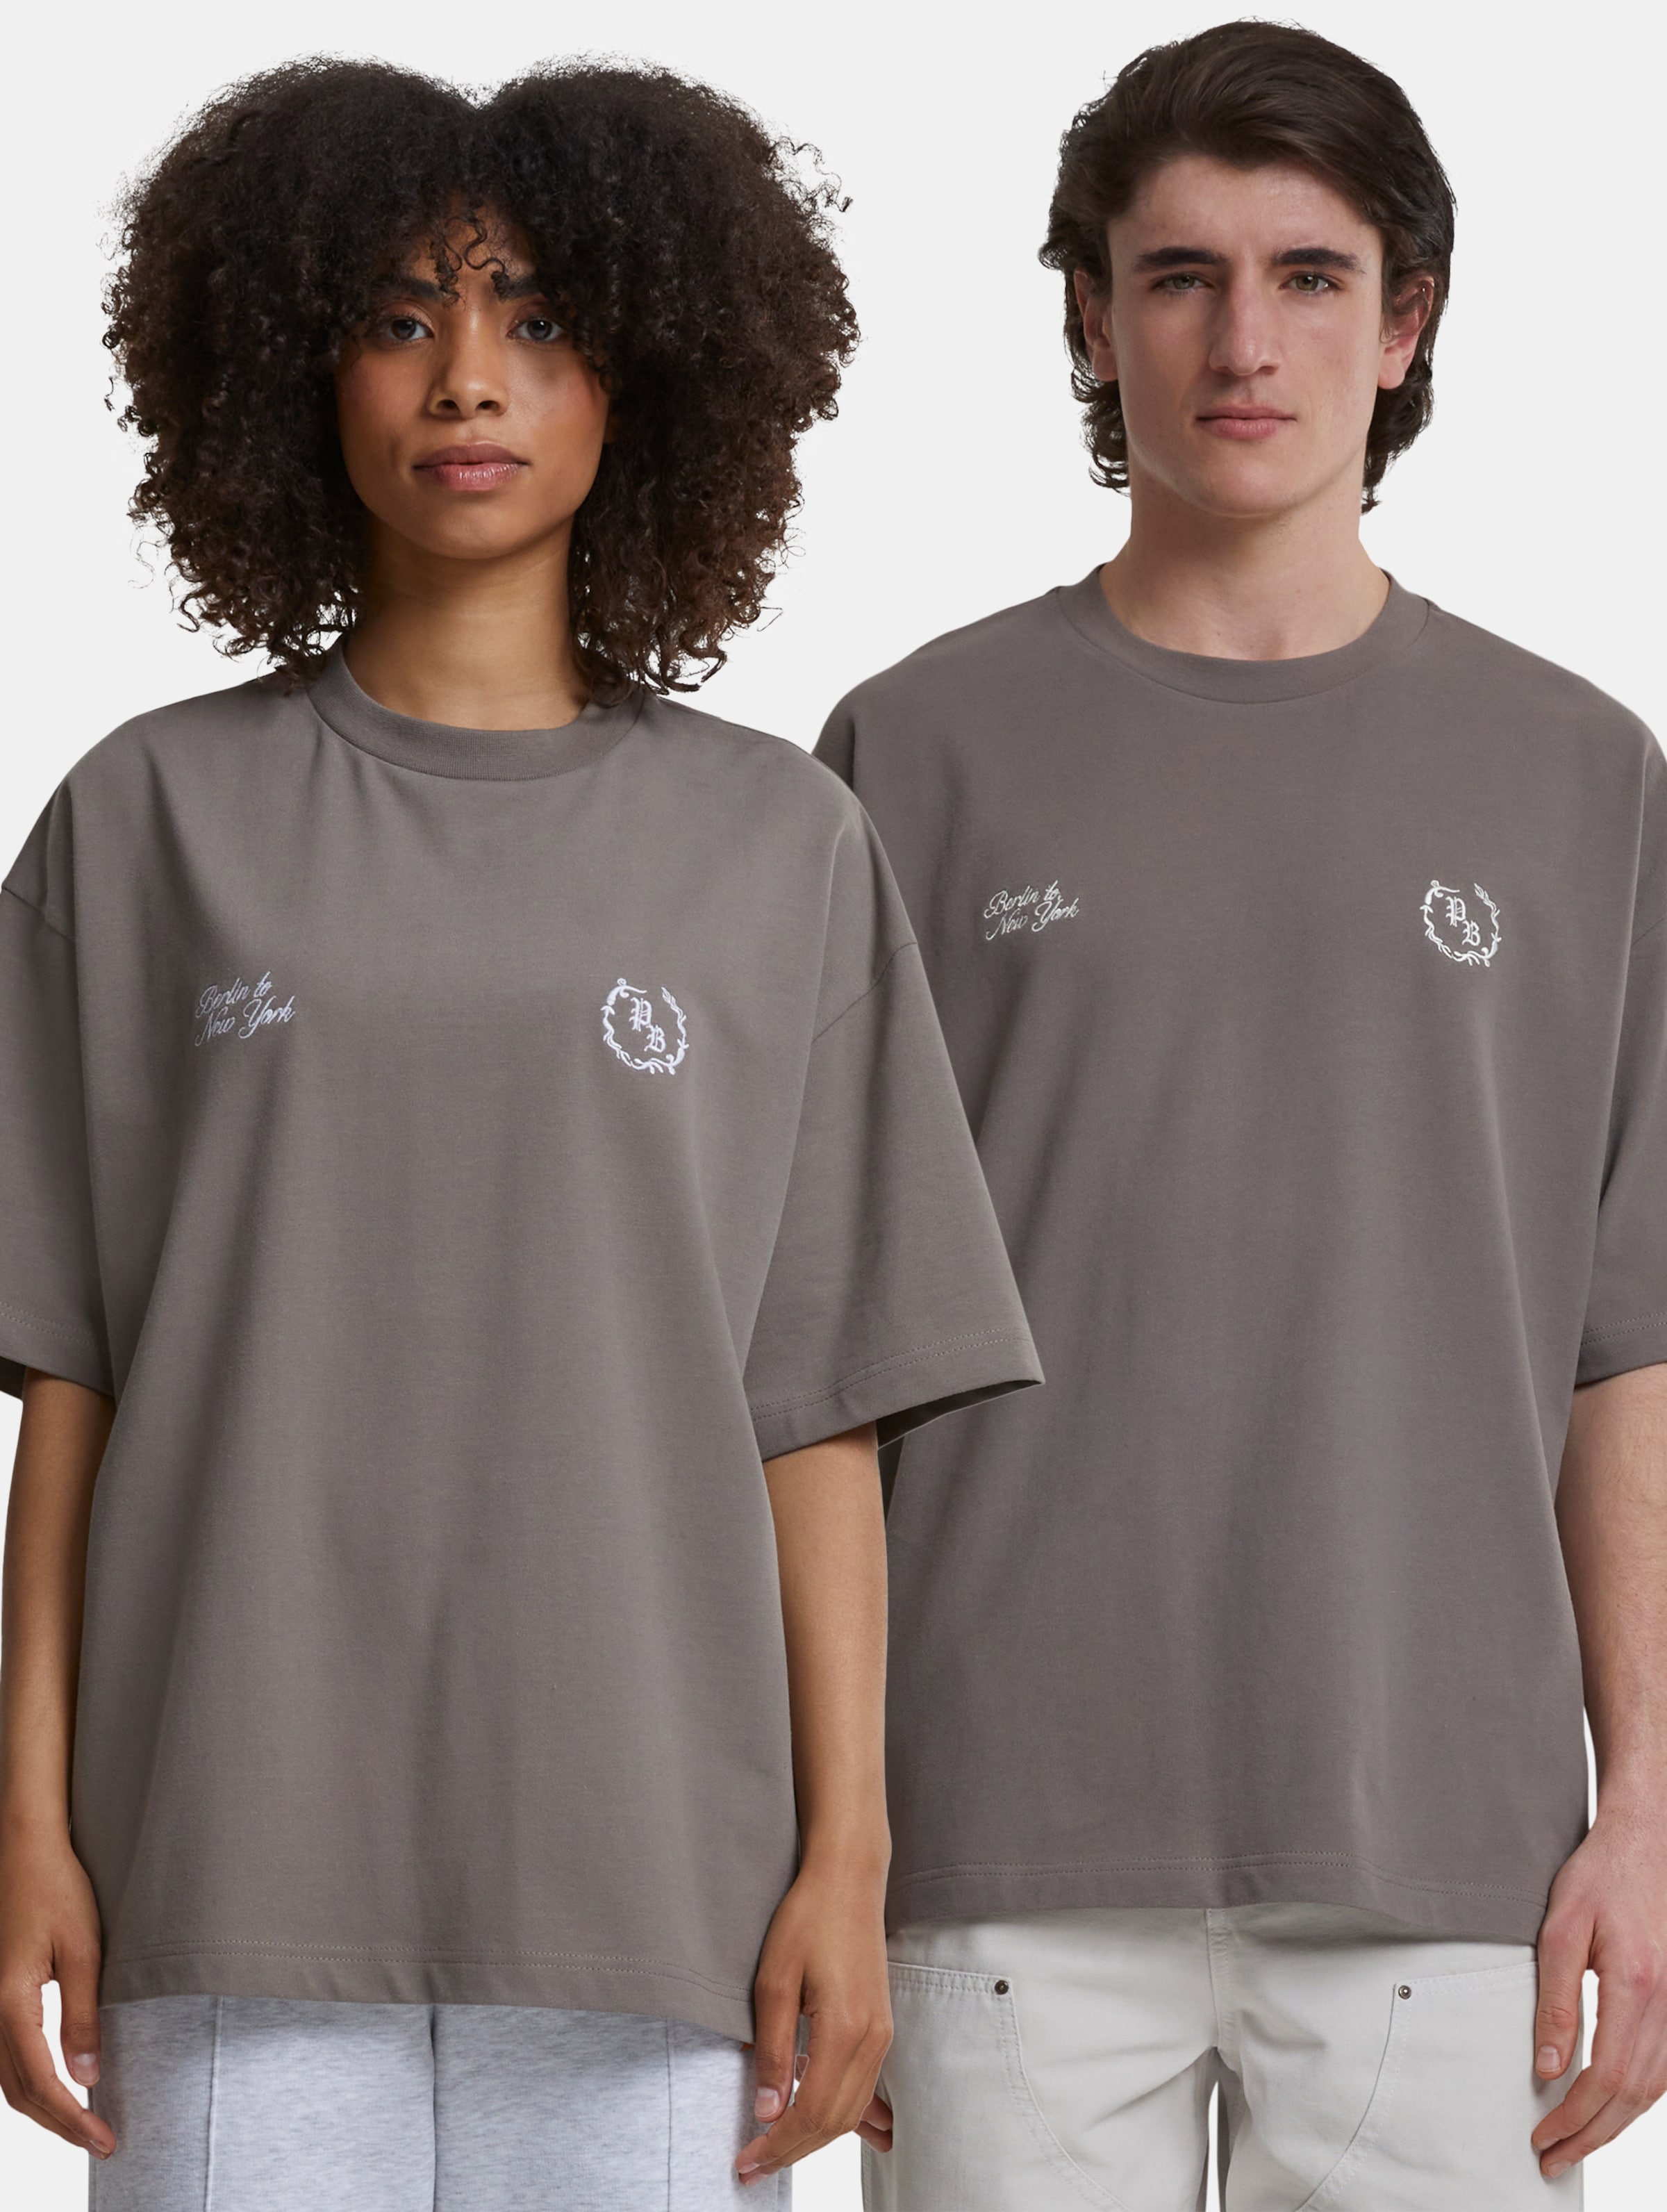 Prohibited Logo T Shirts Frauen,Männer,Unisex op kleur grijs, Maat M